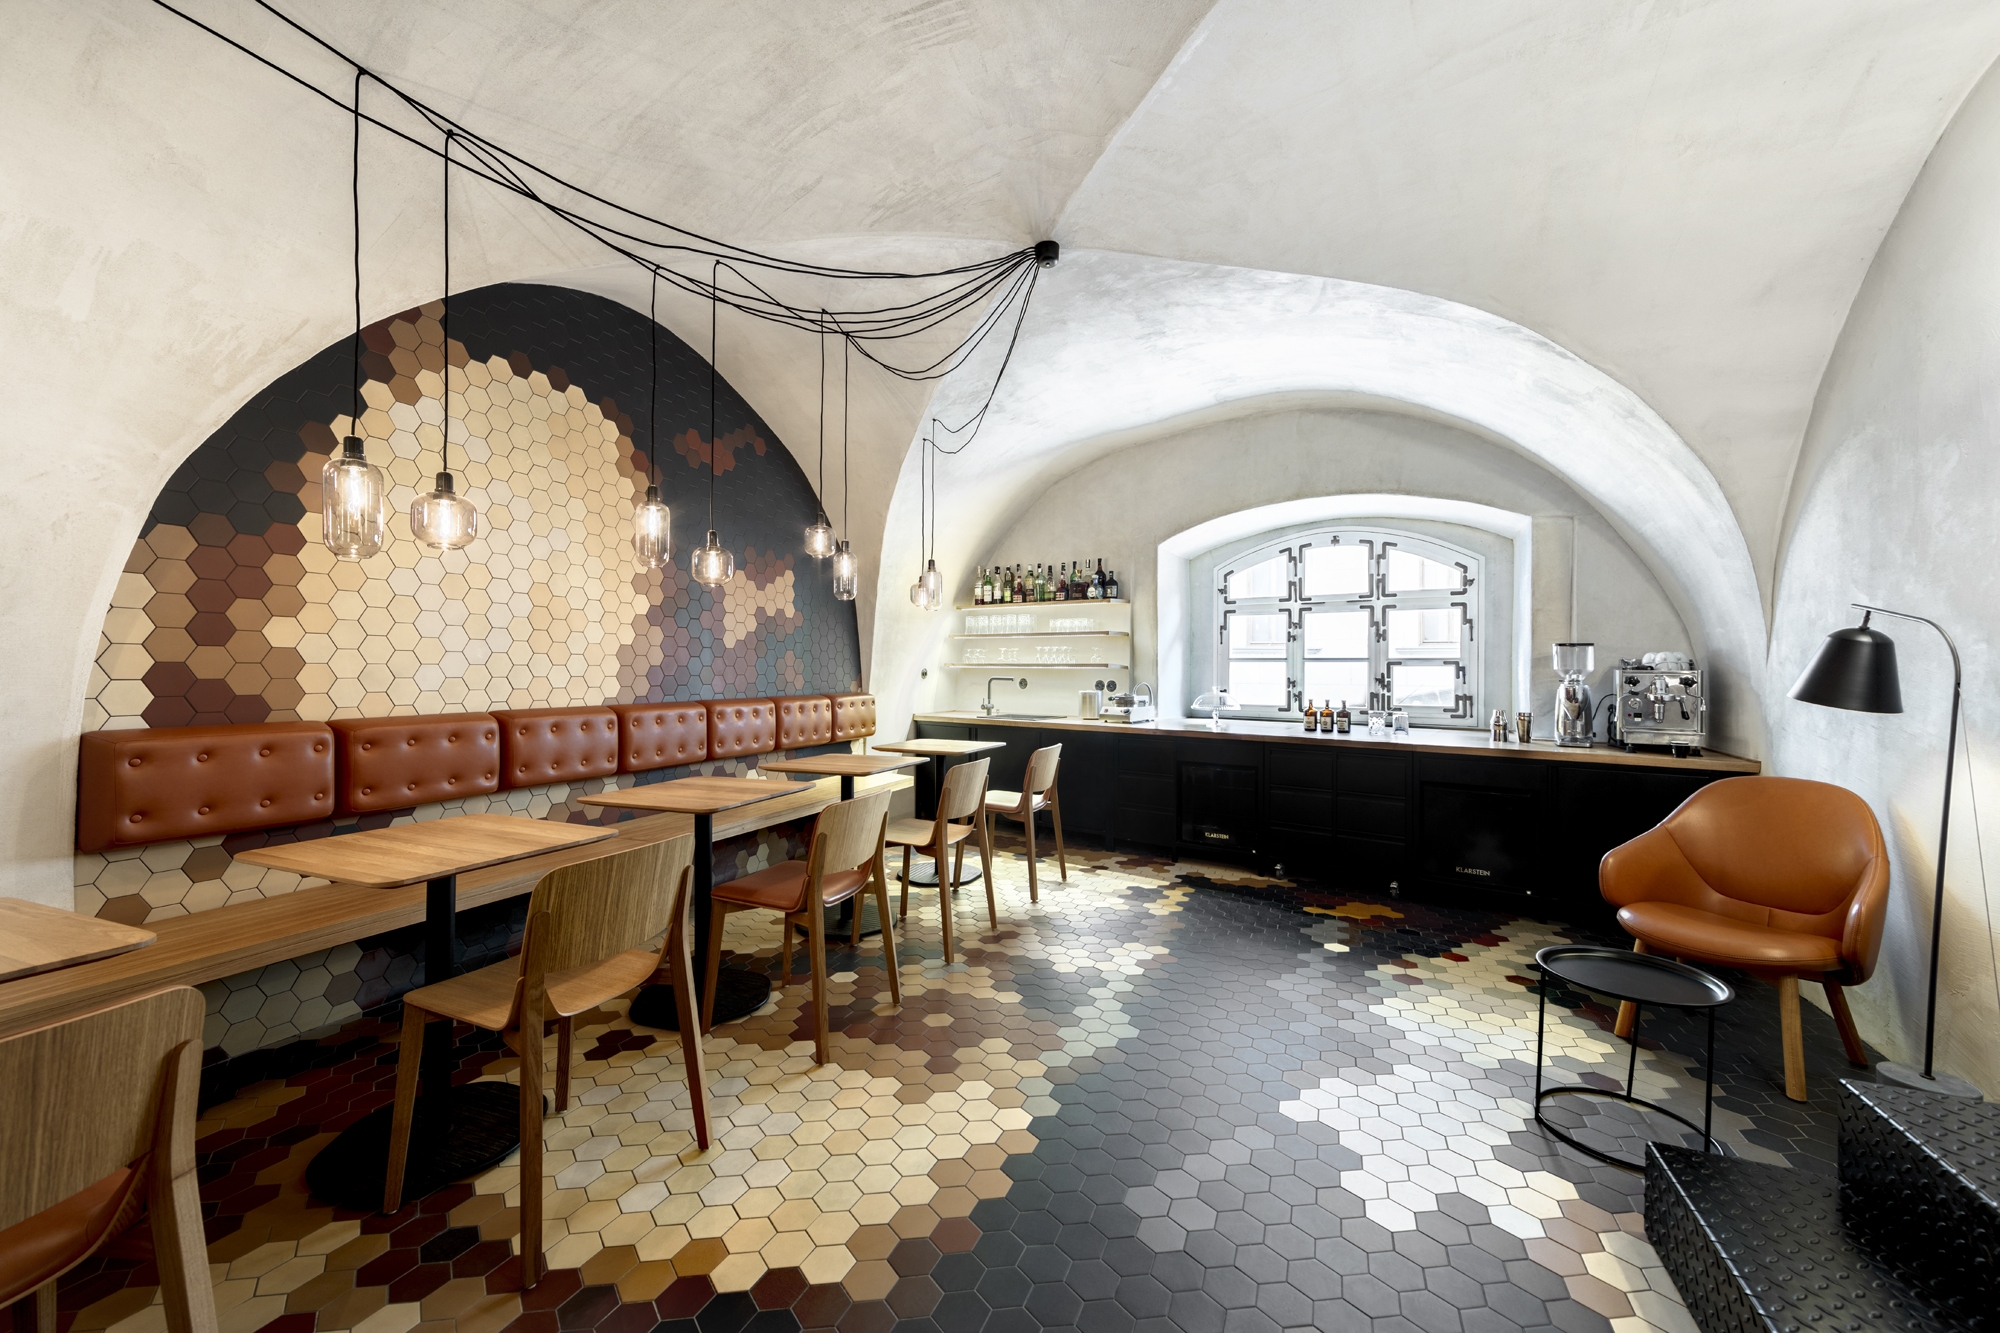 图片[2]|Schody家庭酒吧|ART-Arrakis | 建筑室内设计的创新与灵感